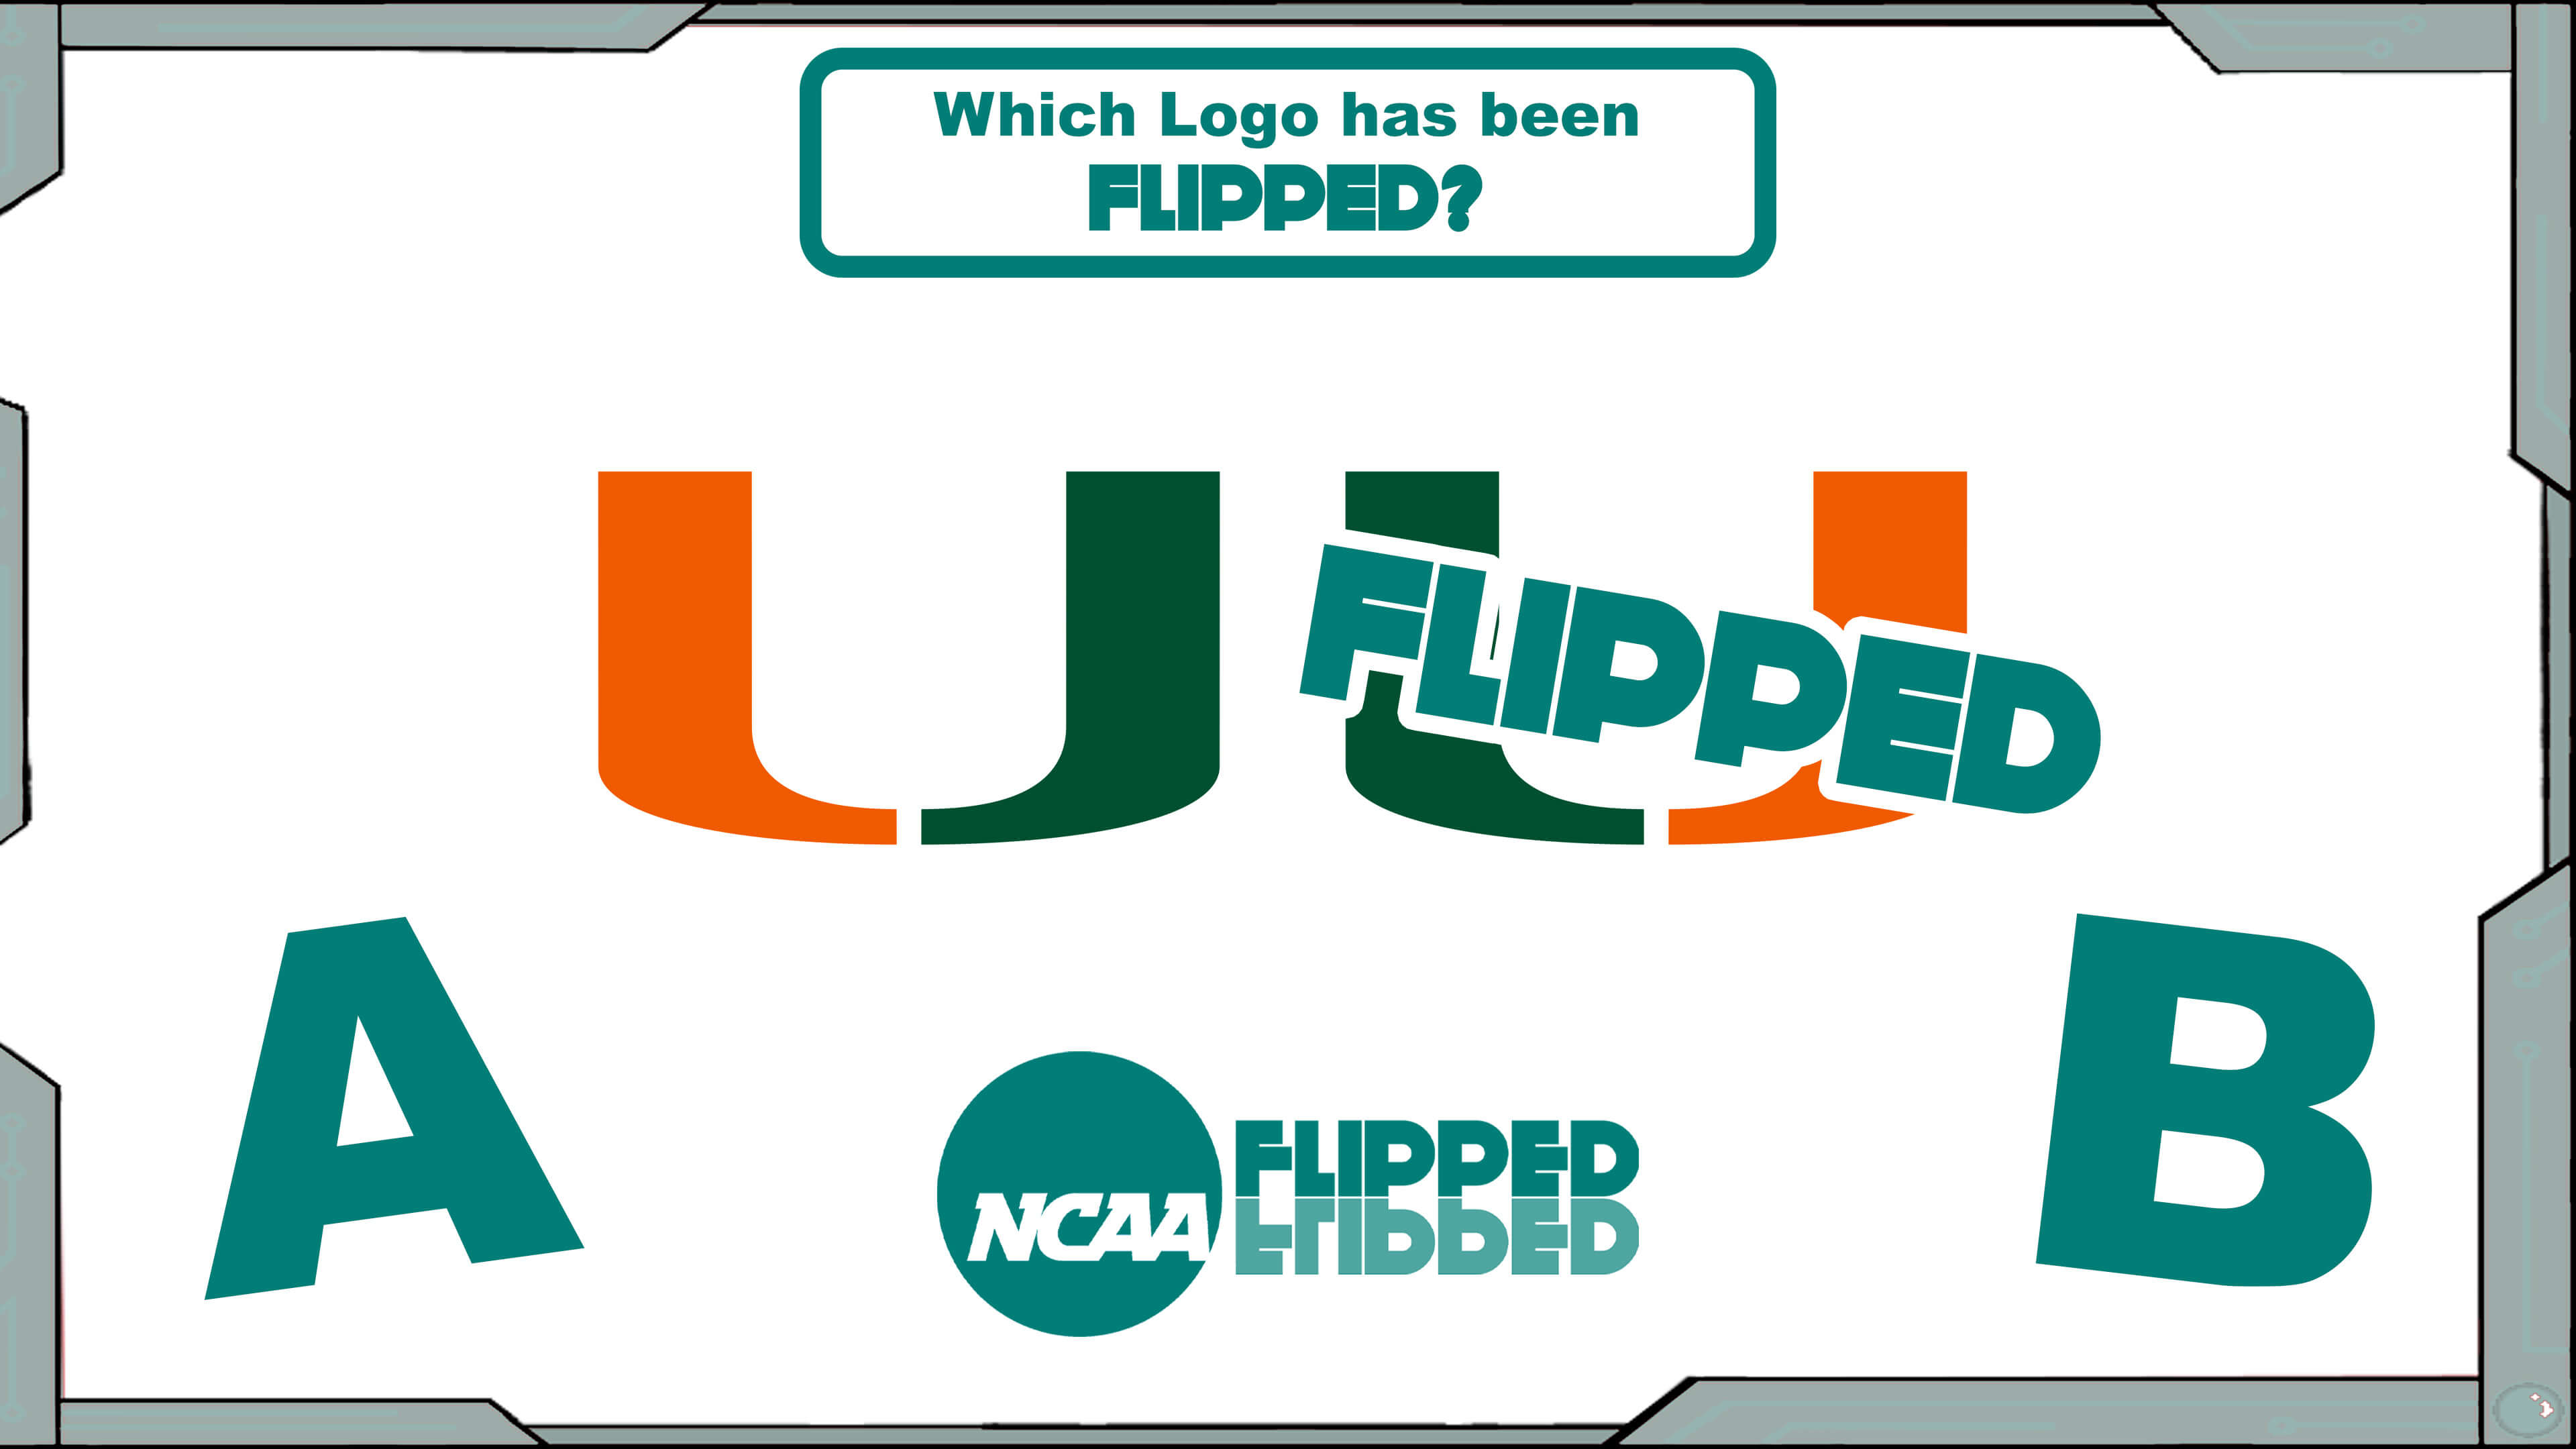 Flipped: NCAA Logos